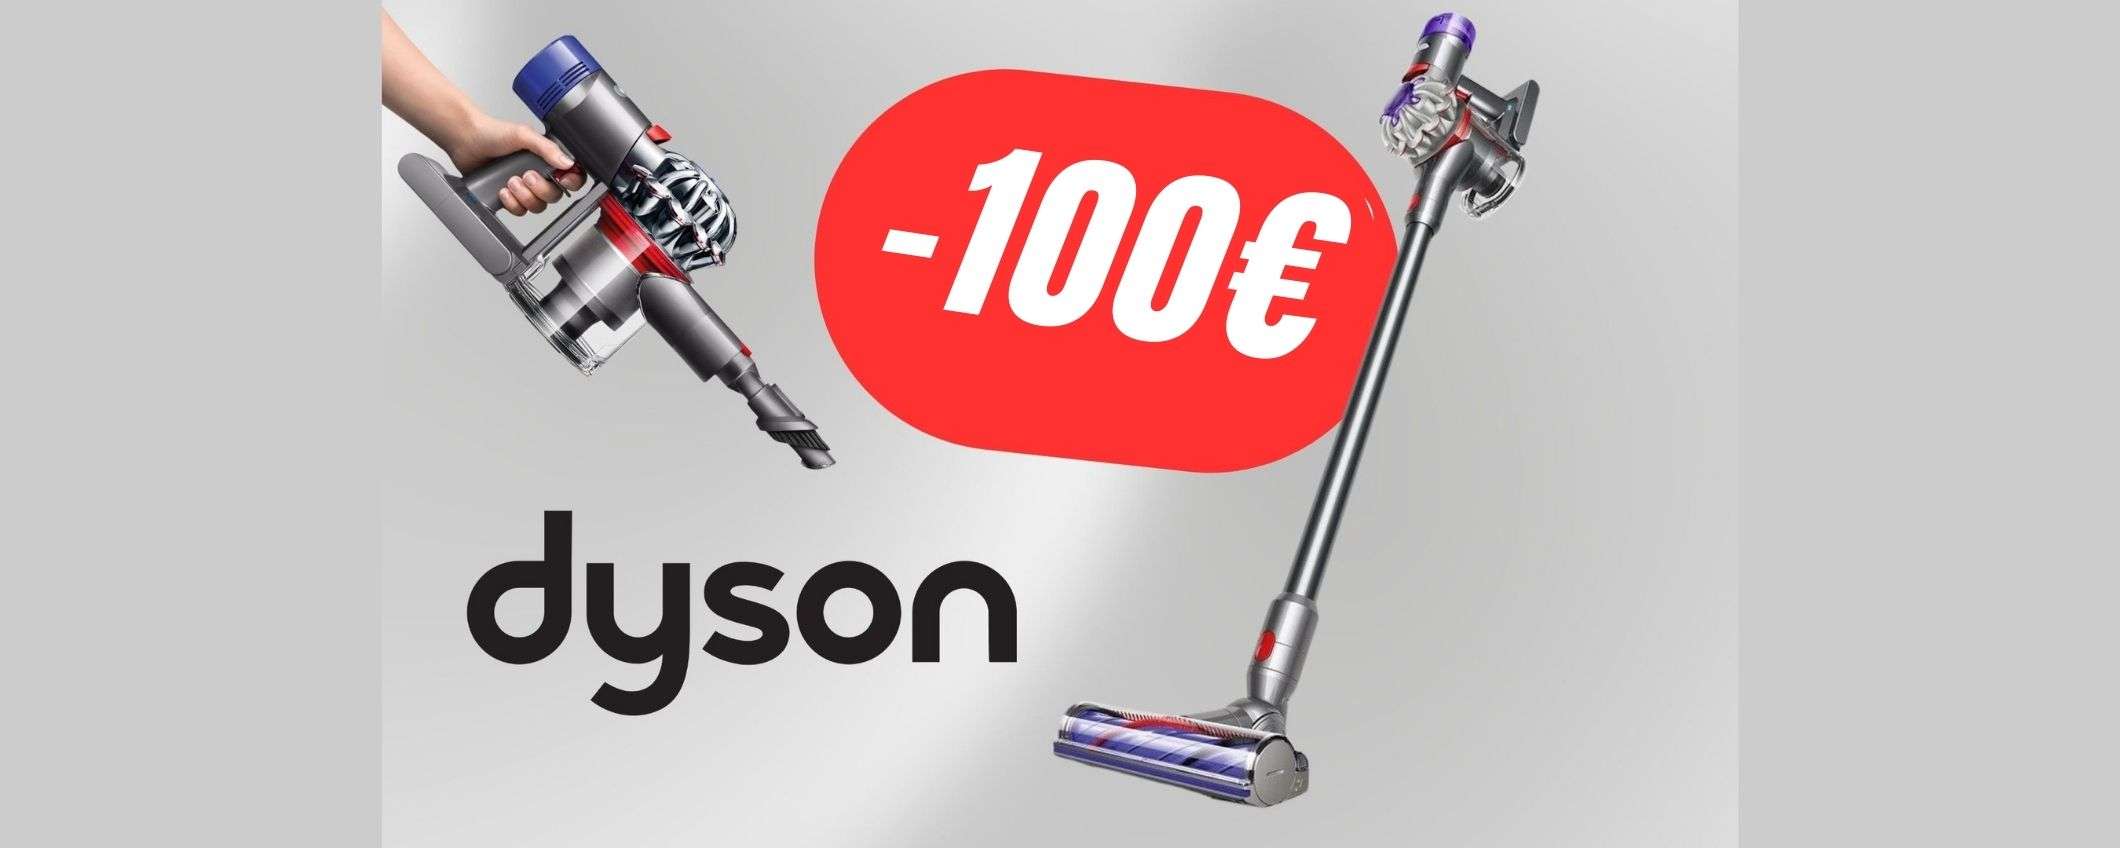 Dyson V8 è l'aspirapolvere dei sogni (e costa 100€ in MENO!)